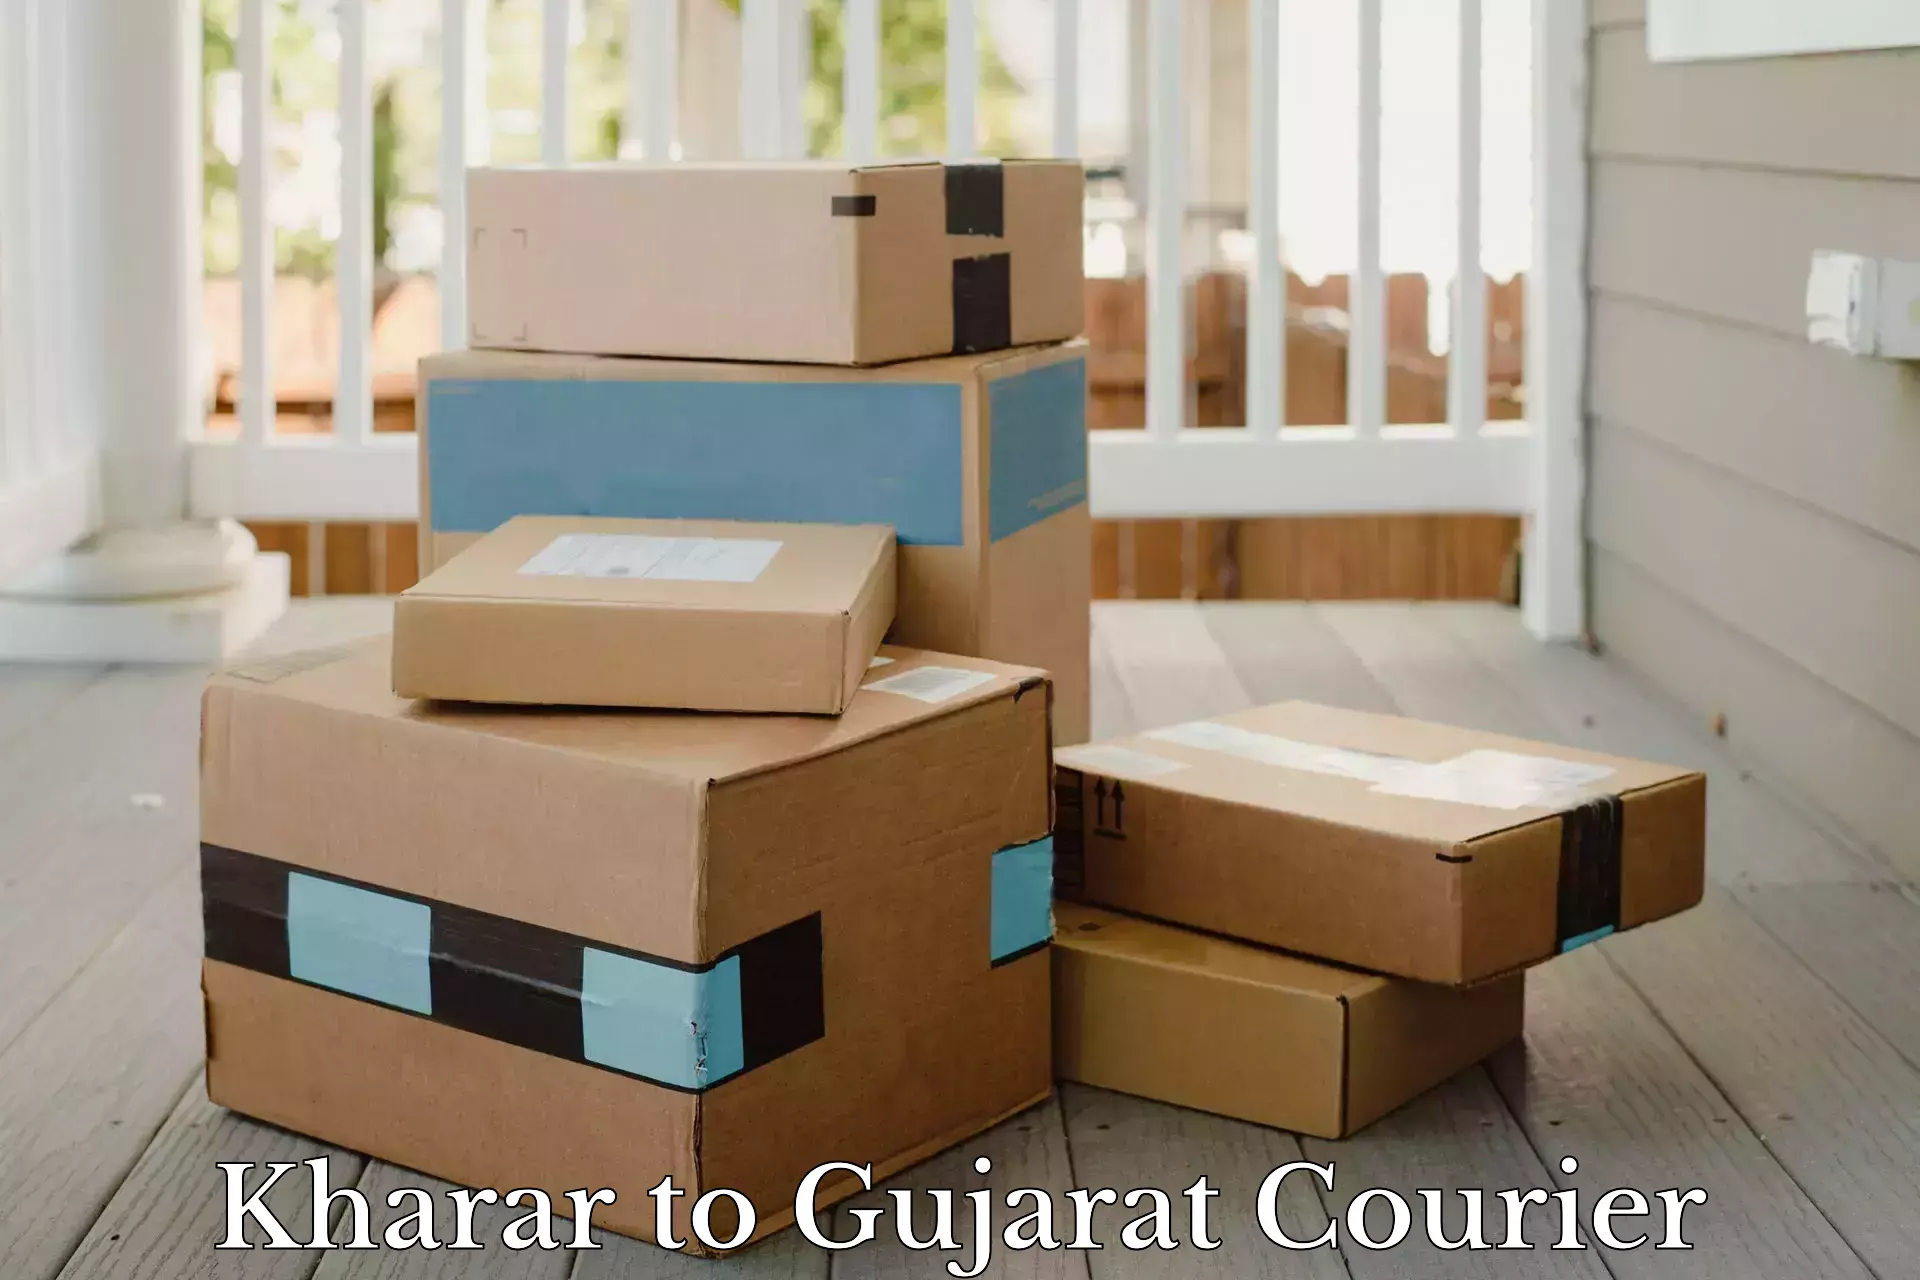 Door-to-door shipment Kharar to Ahmedabad